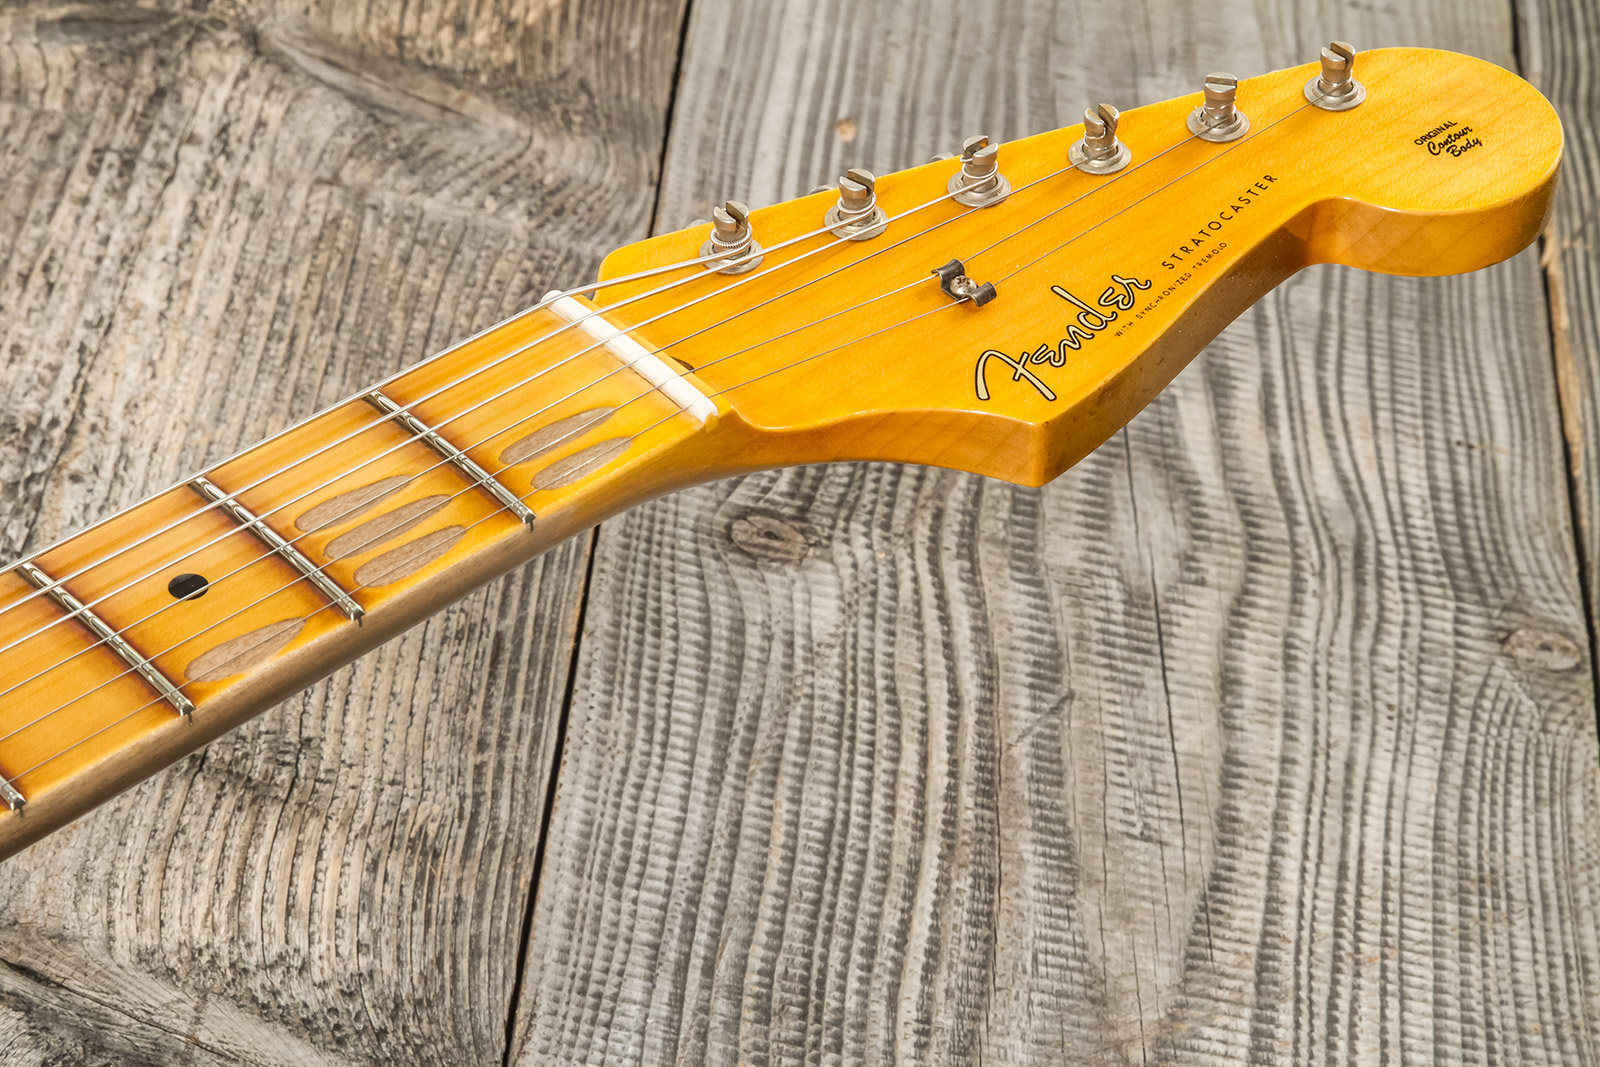 Fender Custom Shop Strat 1956 3s Trem Mn #cz575333 - Journeyman Relic 2-color Sunburst - Str shape electric guitar - Variation 6